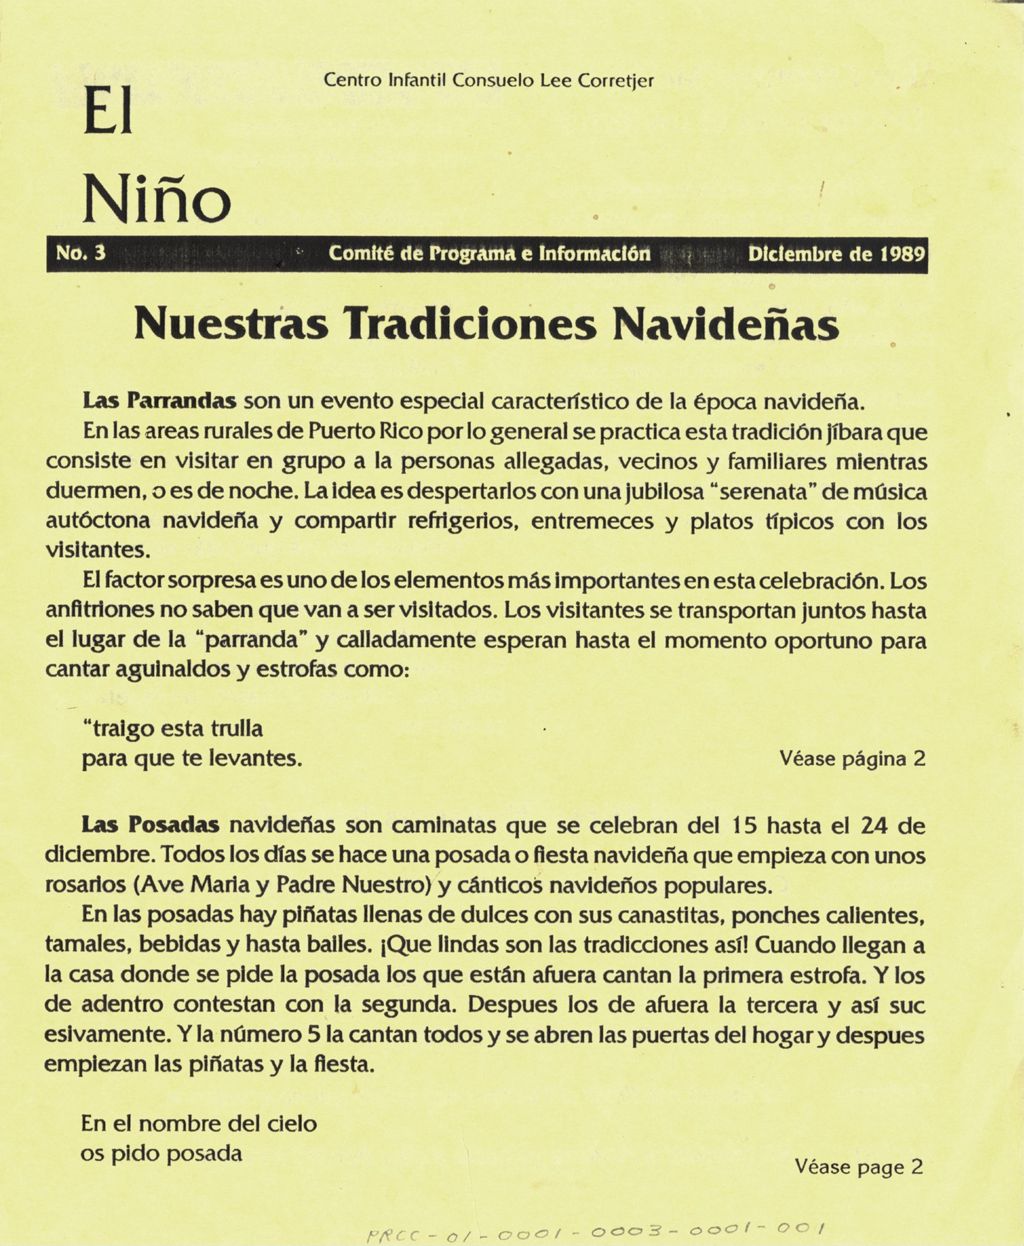 El Ninó, no. 3 (Dicembre de 1989)